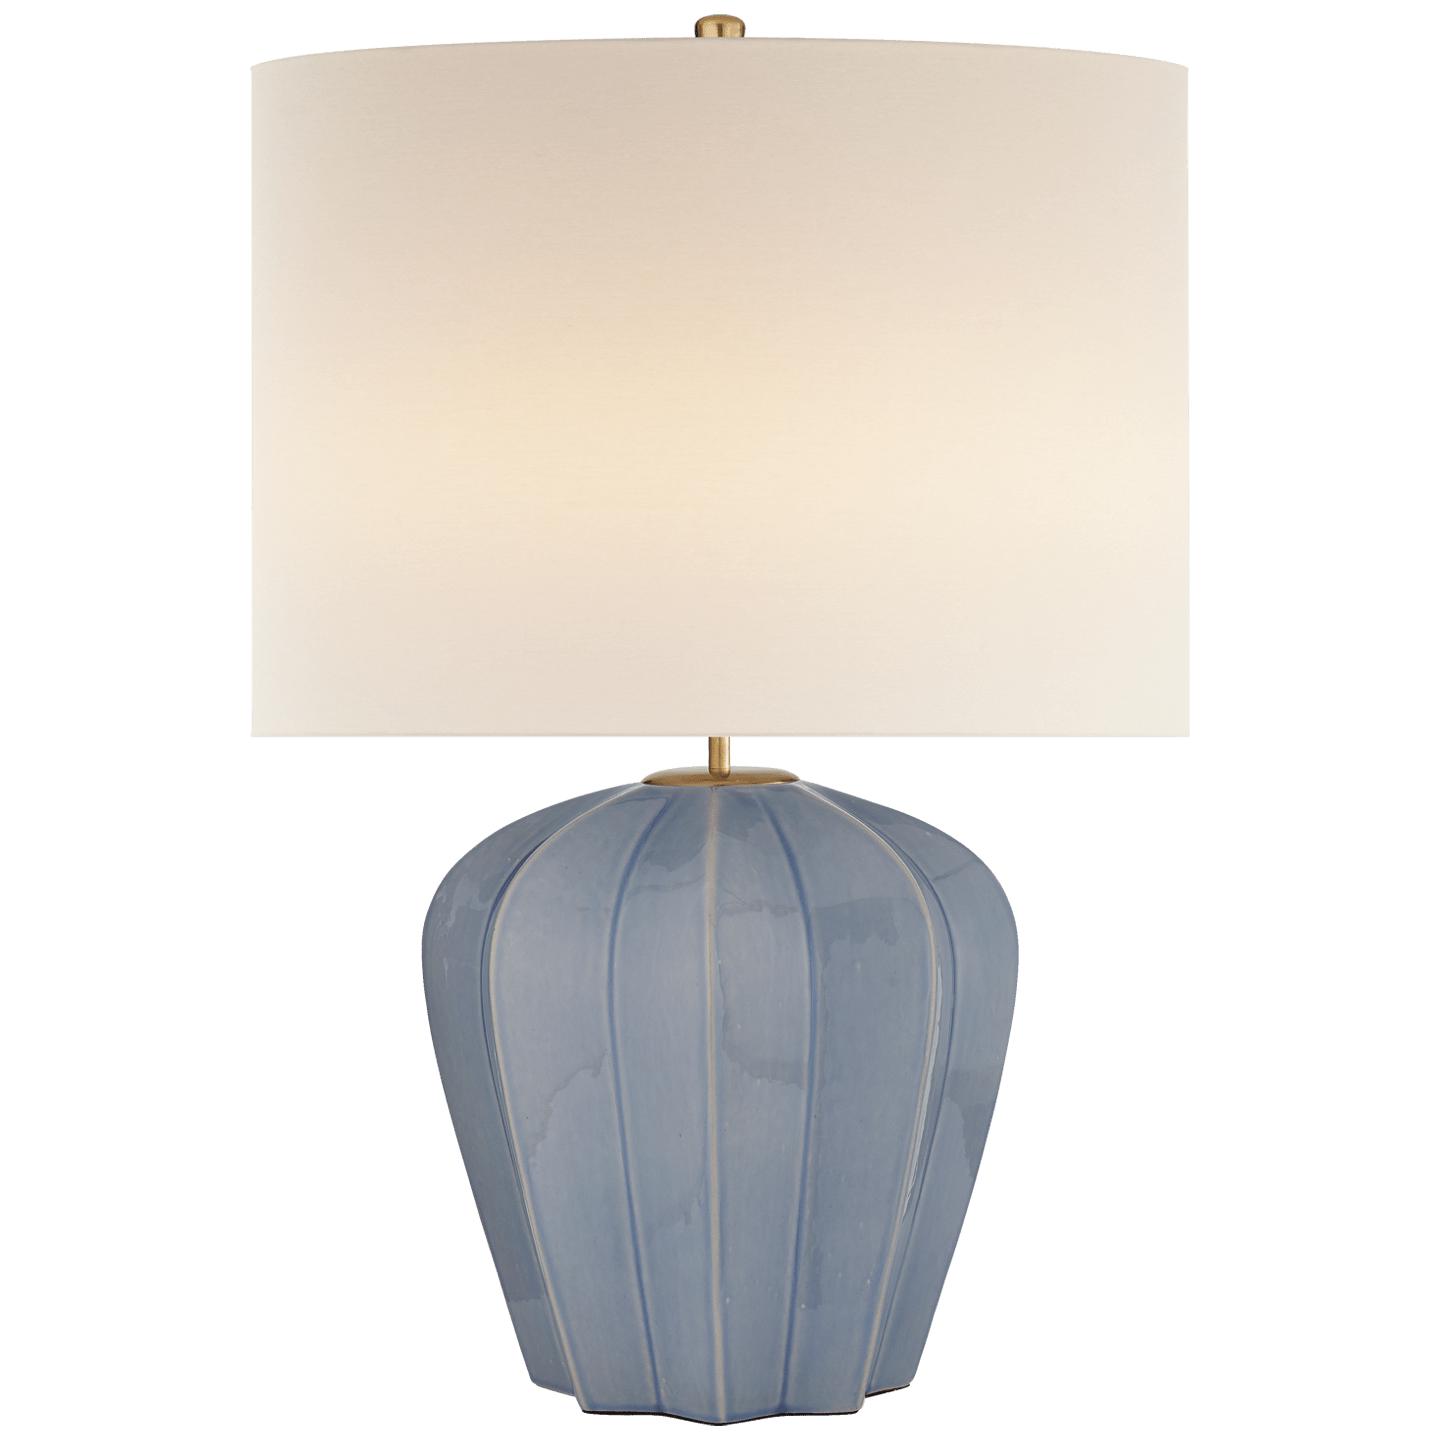 Купить Настольная лампа Pierrepont Medium Table Lamp в интернет-магазине roooms.ru